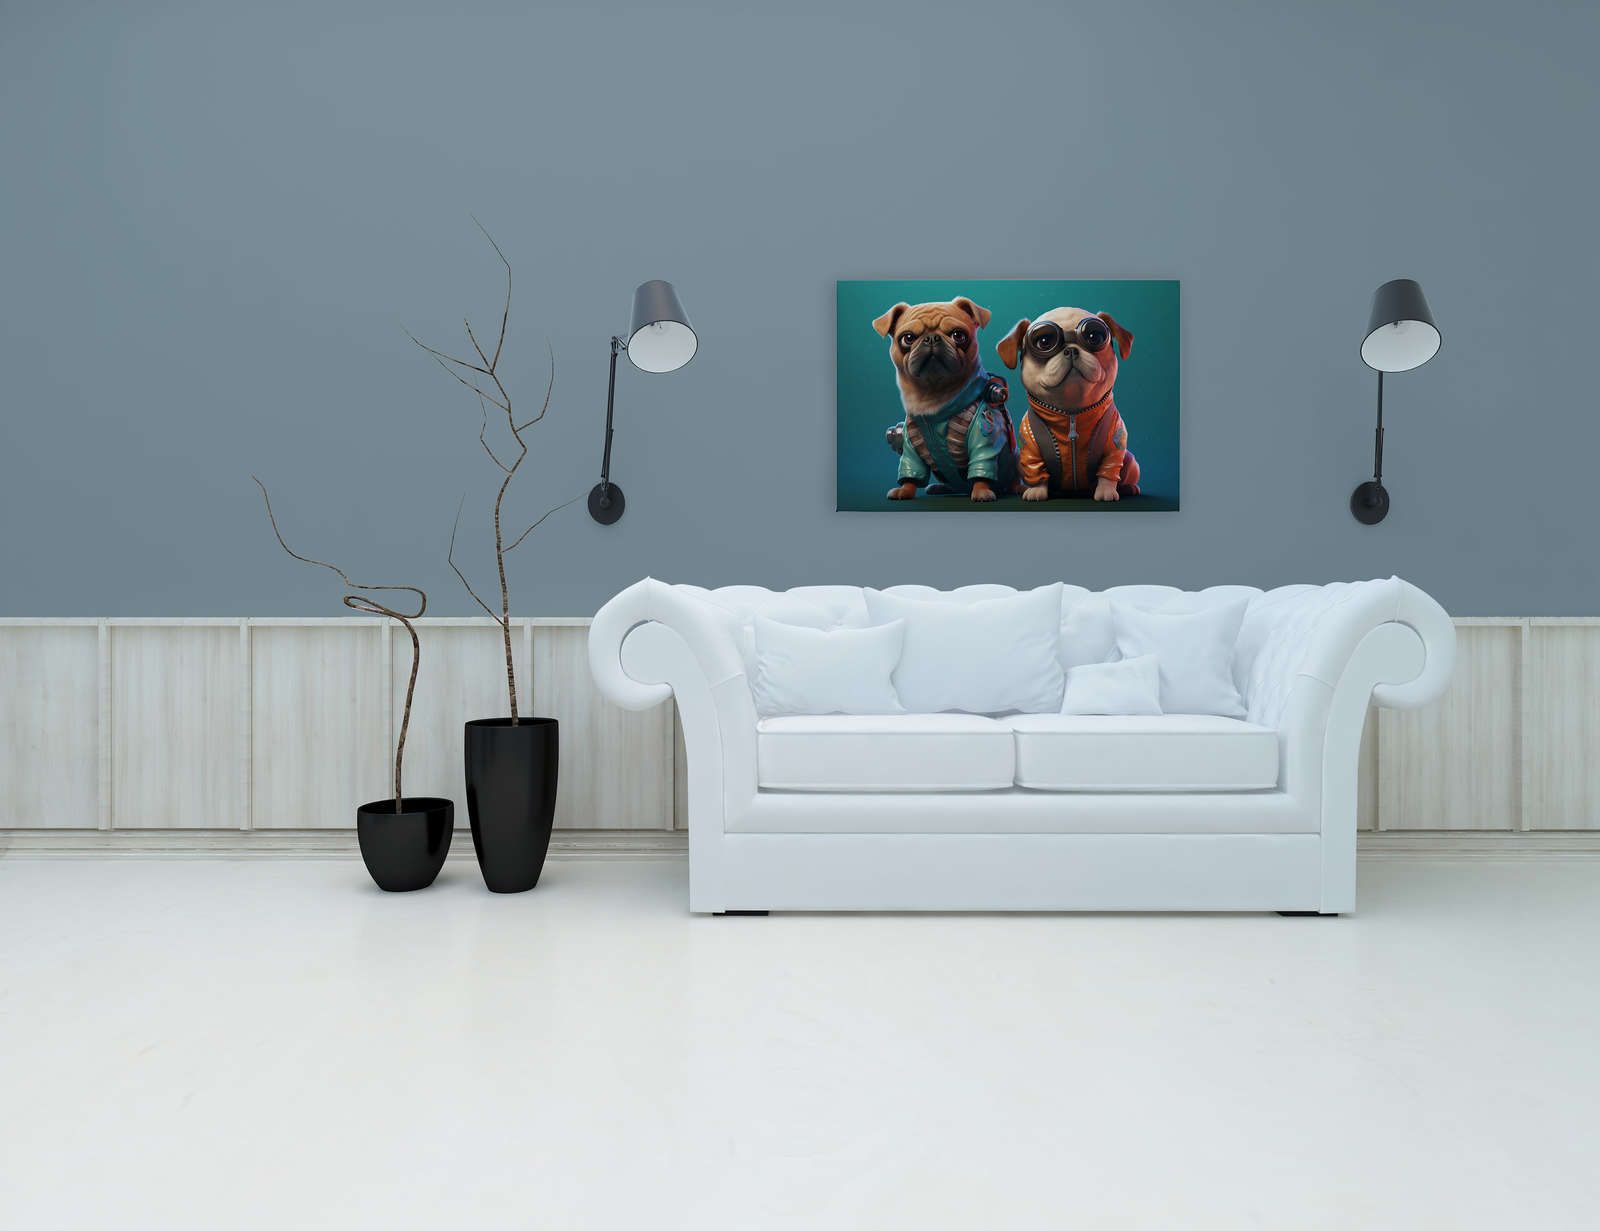             KI-Leinwandbild »Cute Dogs« – 90 cm x 60 cm
        